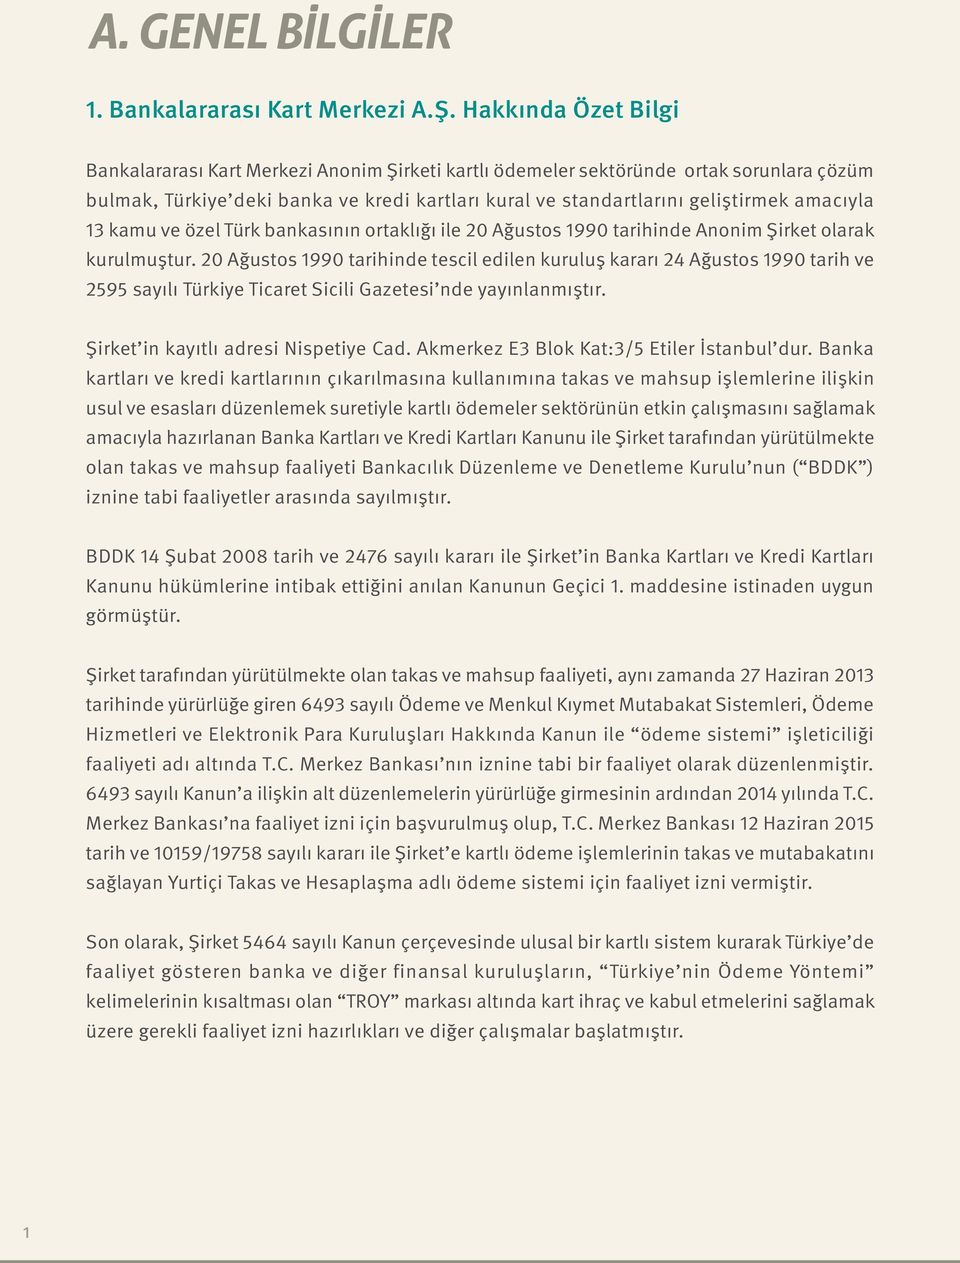 amacıyla 13 kamu ve özel Türk bankasının ortaklığı ile 20 Ağustos 1990 tarihinde Anonim Şirket olarak kurulmuştur.